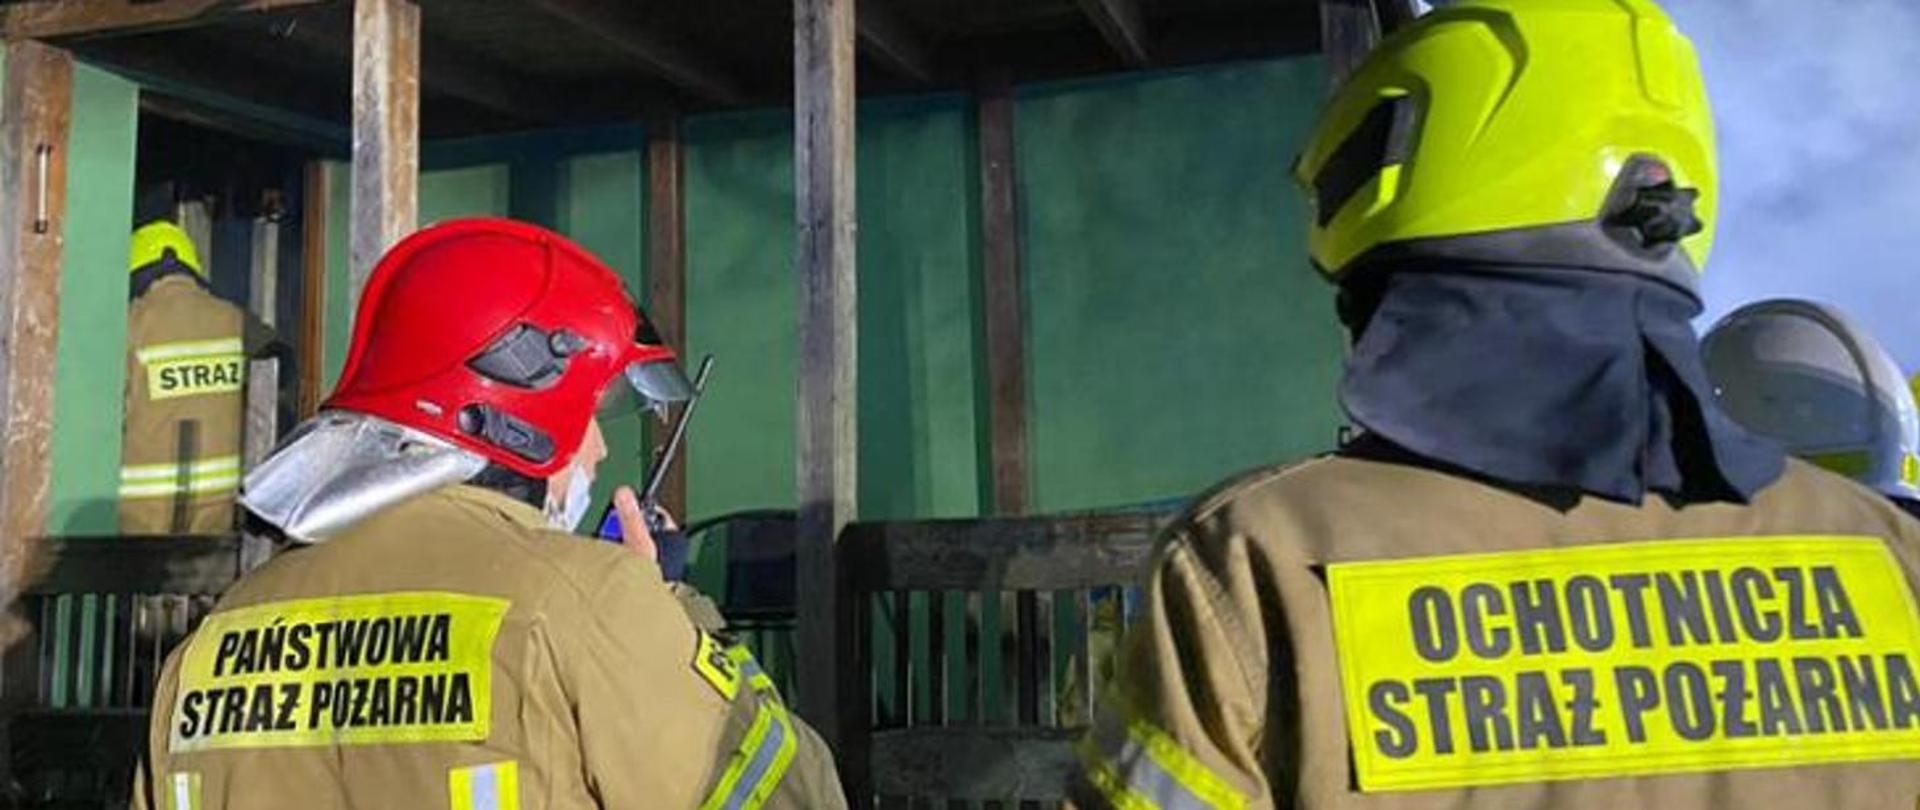 Dwóch strażaków odwróconych tyłem, ubranych w ubrania specjalne, na plecach napisy Państwowa Straż Pożarna oraz Ochotnicza Straż Pożarna